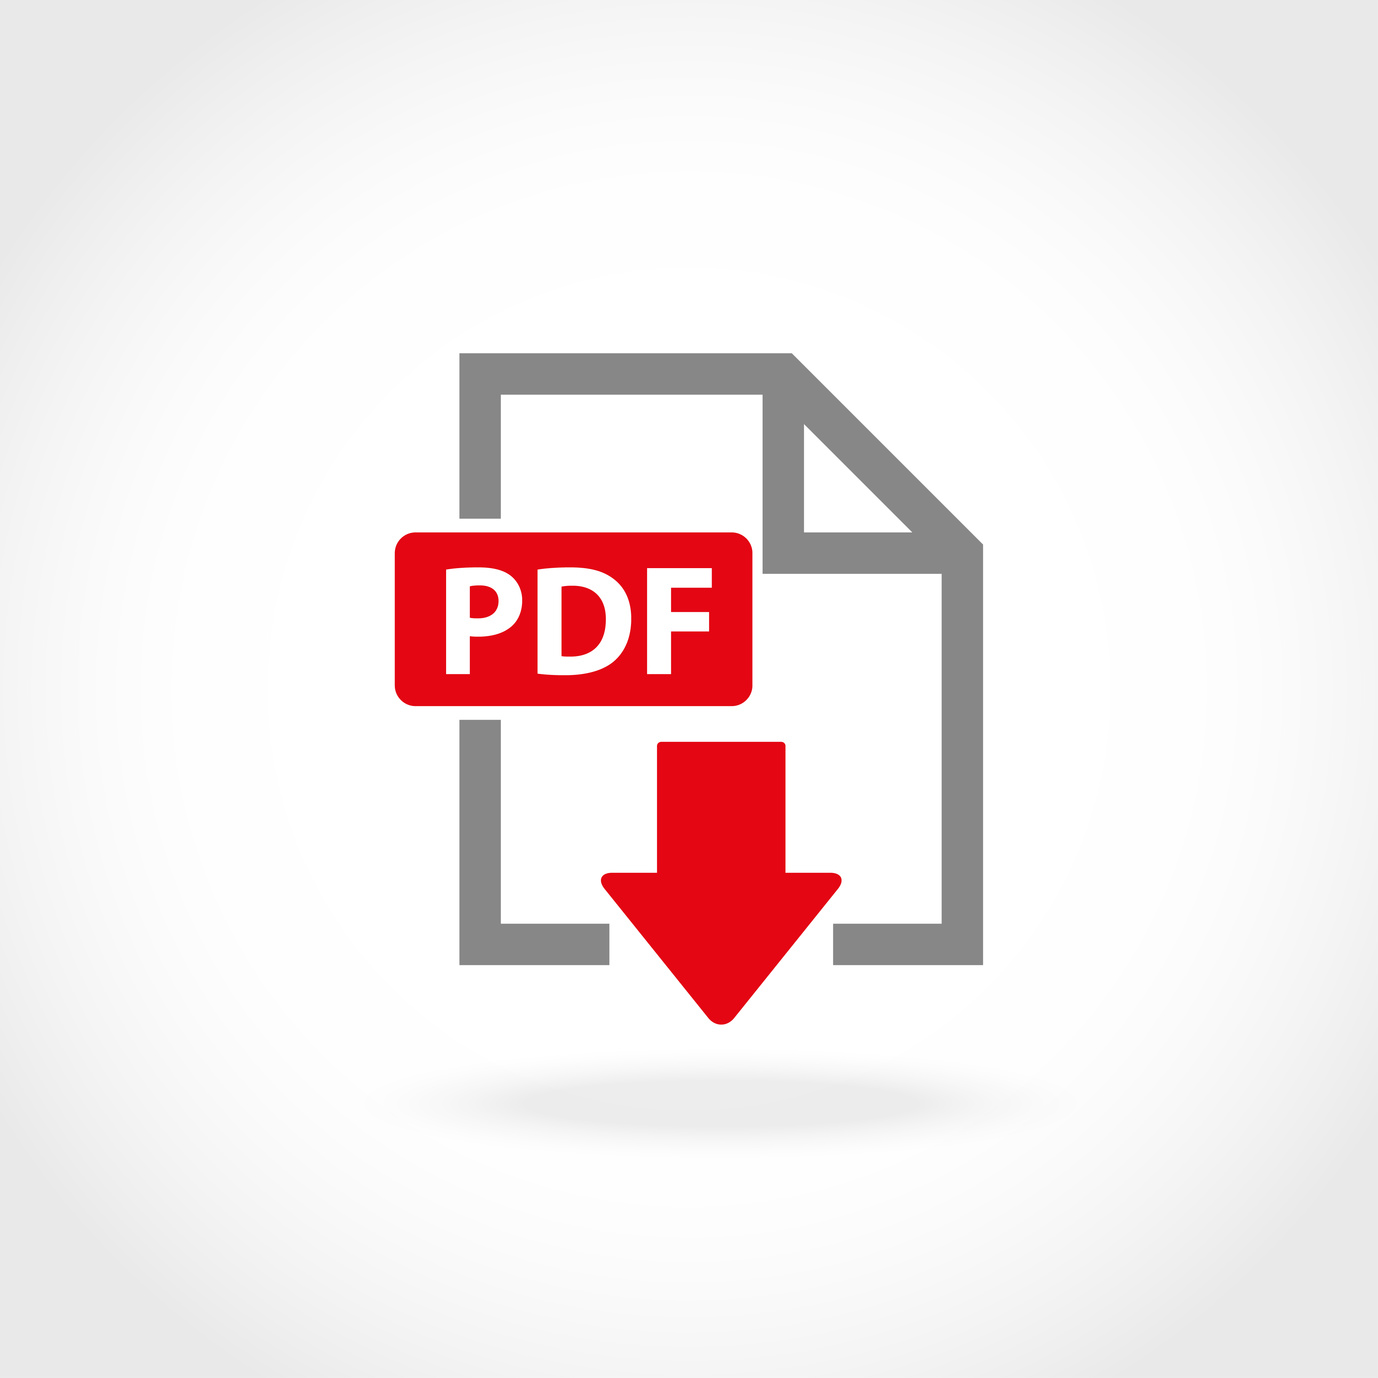 Vector PDF icon set. PDF Icon Object, PDF Icon Picture, PDF Icon Image - stock vector